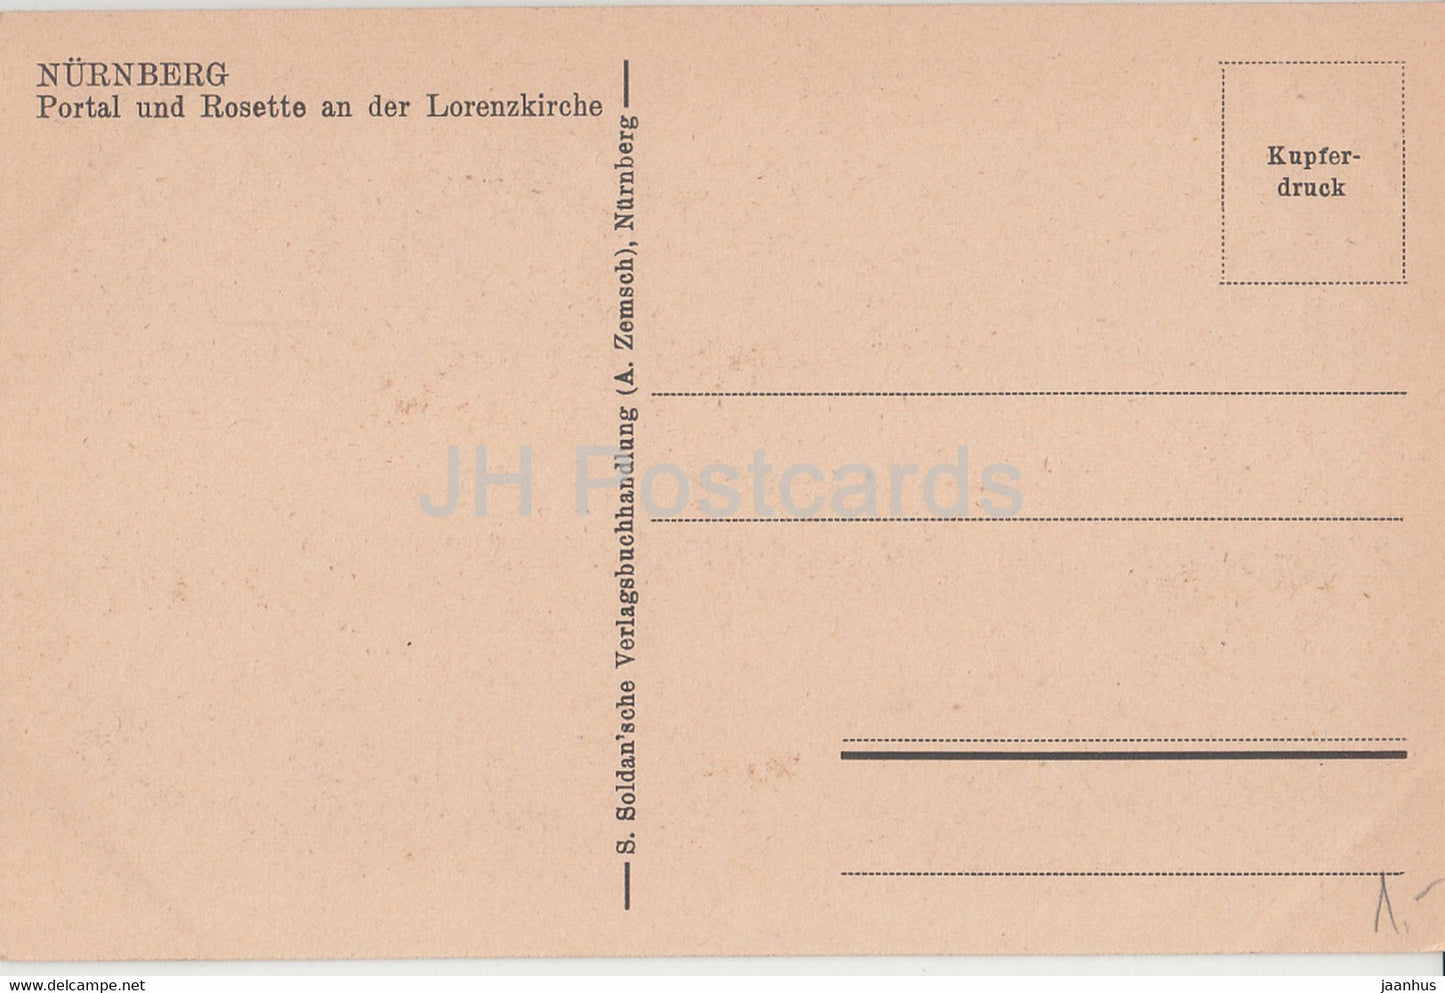 Nurnberg - Portal und Rosette an der Lorenzkirche - church - old postcard - Germany - unused